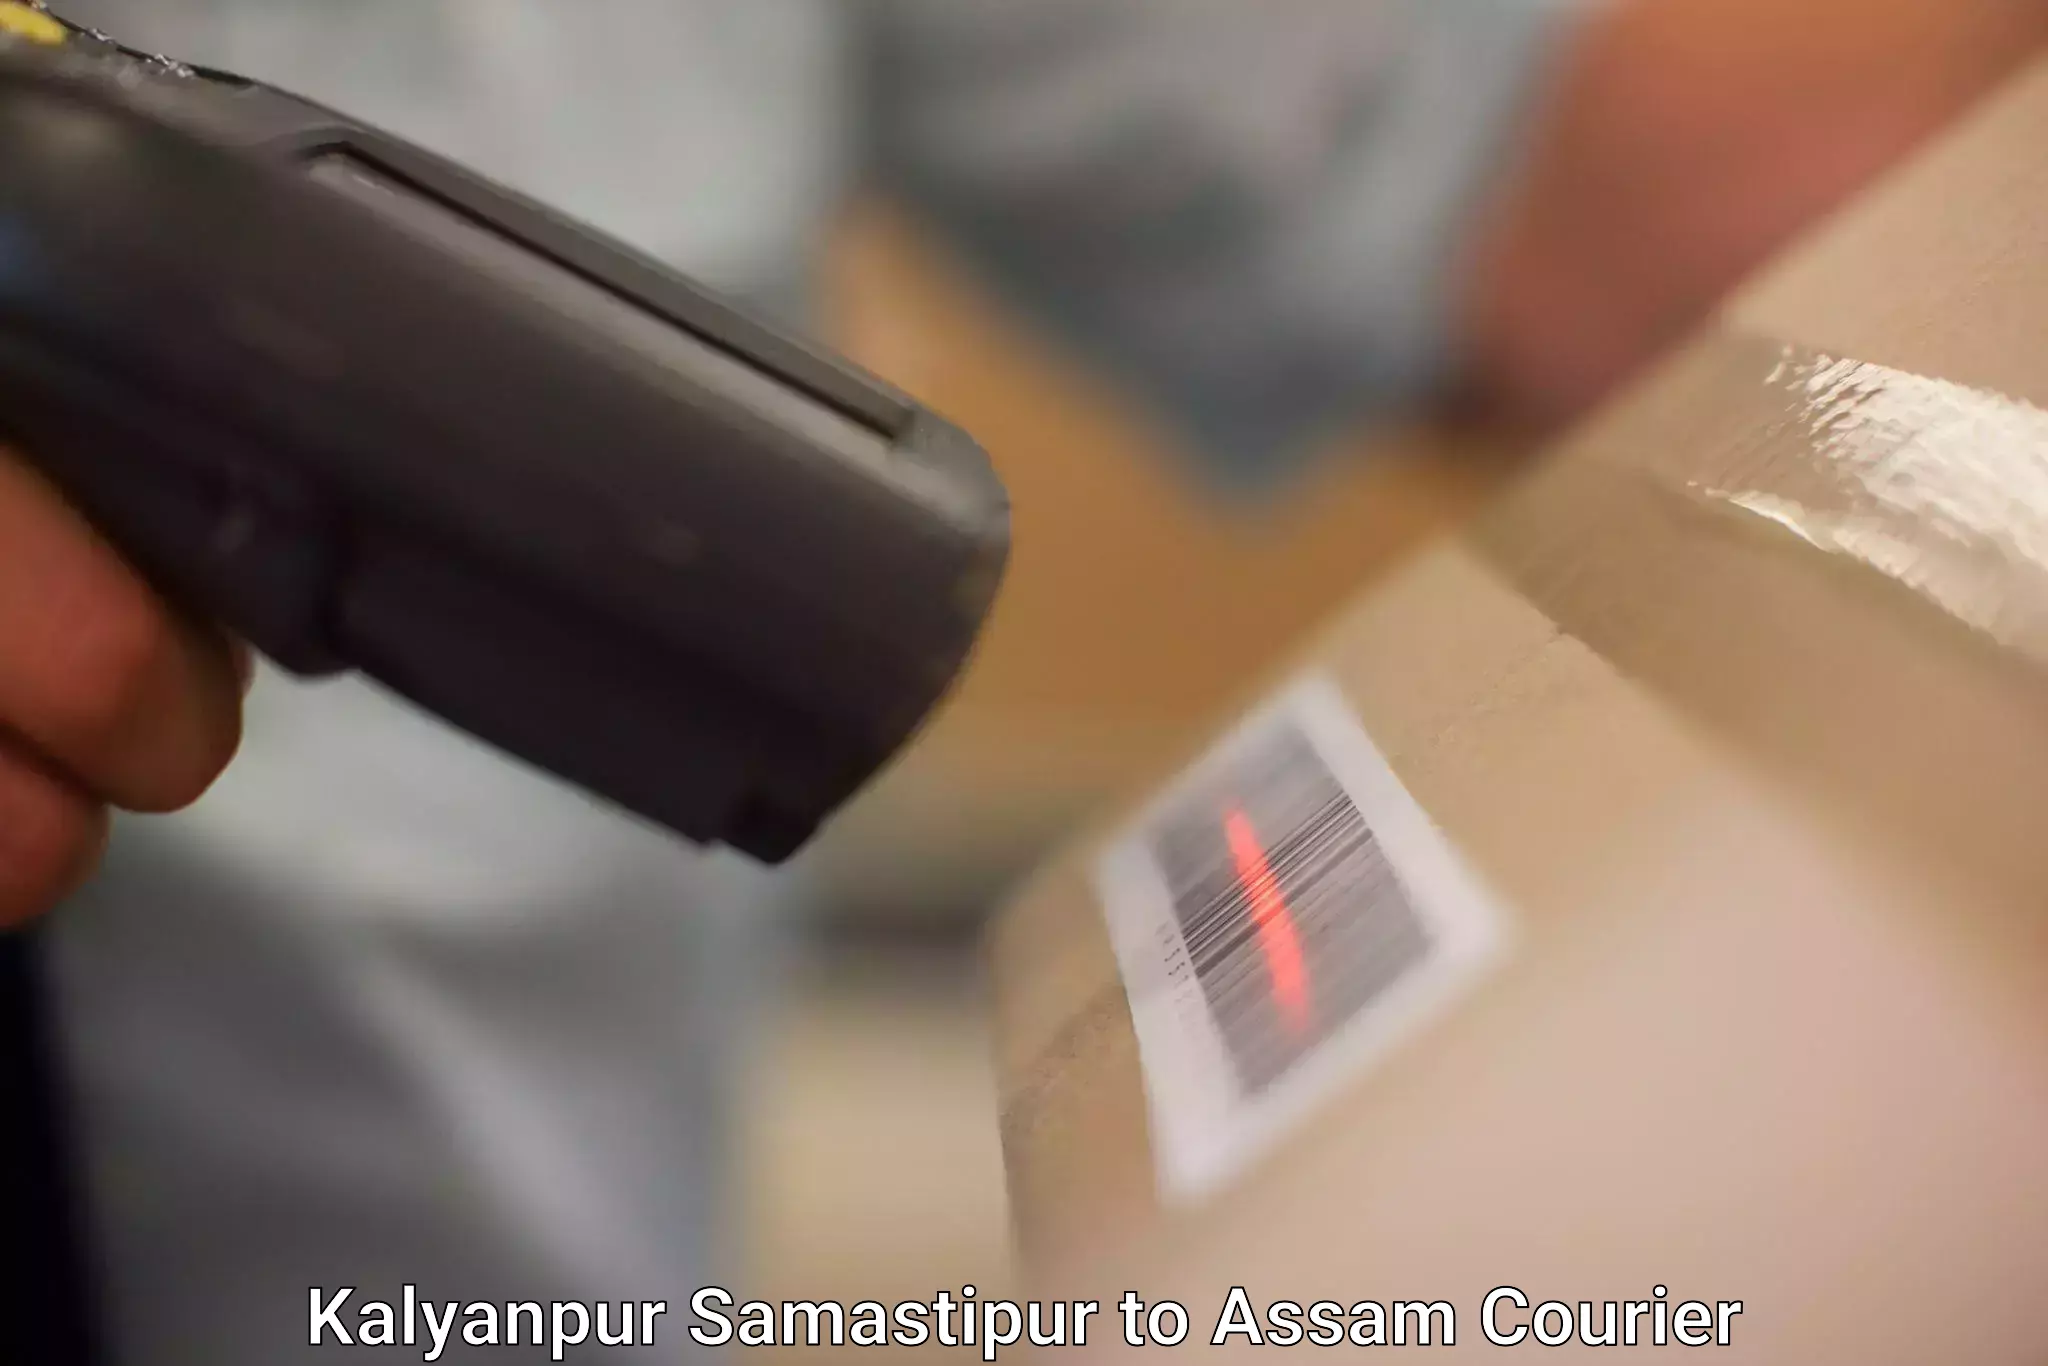 Lightweight courier Kalyanpur Samastipur to Assam